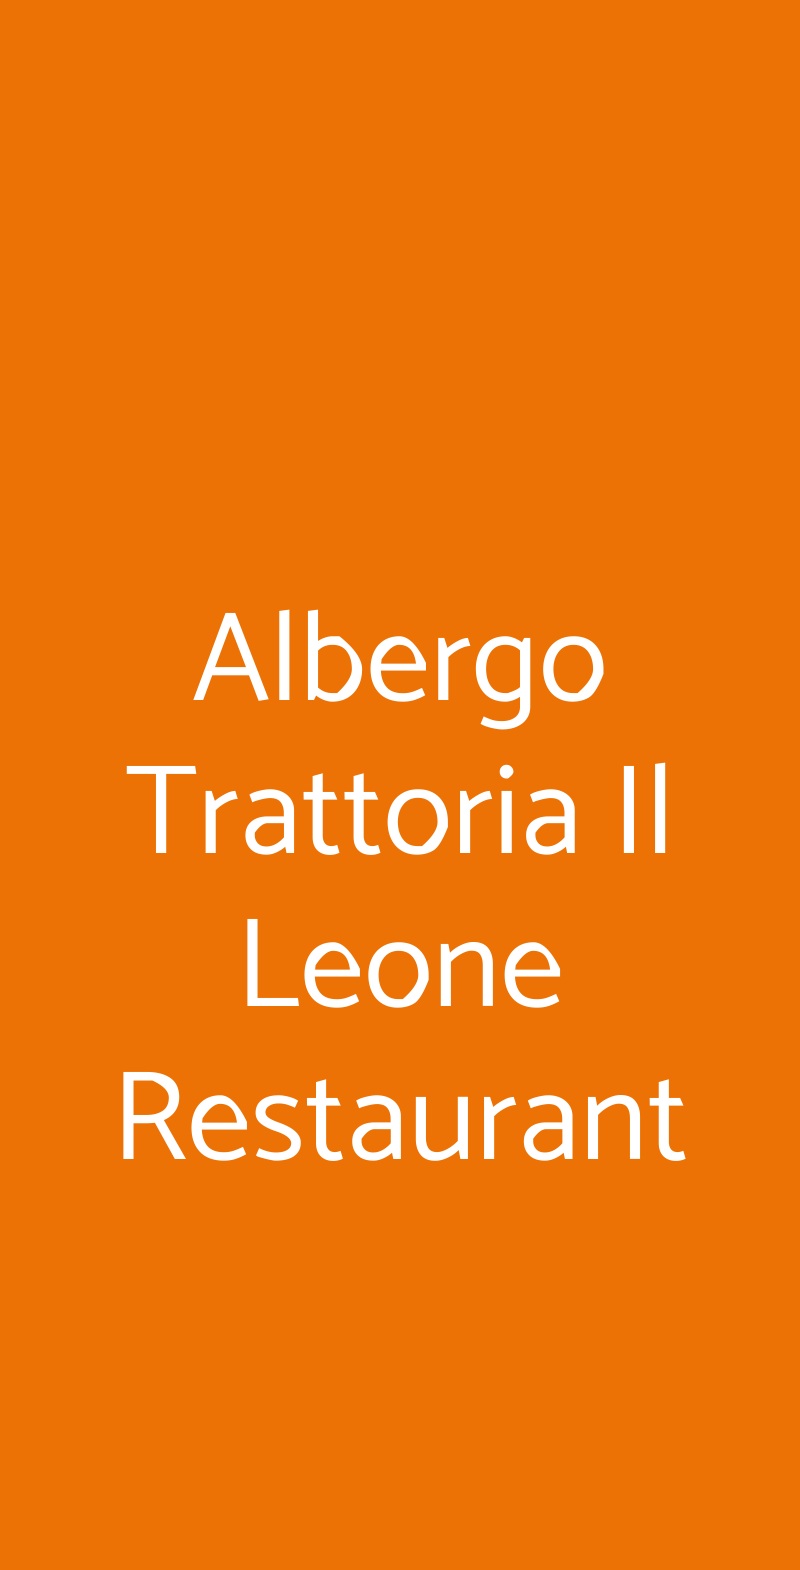 Albergo Trattoria Il Leone Restaurant Pomponesco menù 1 pagina